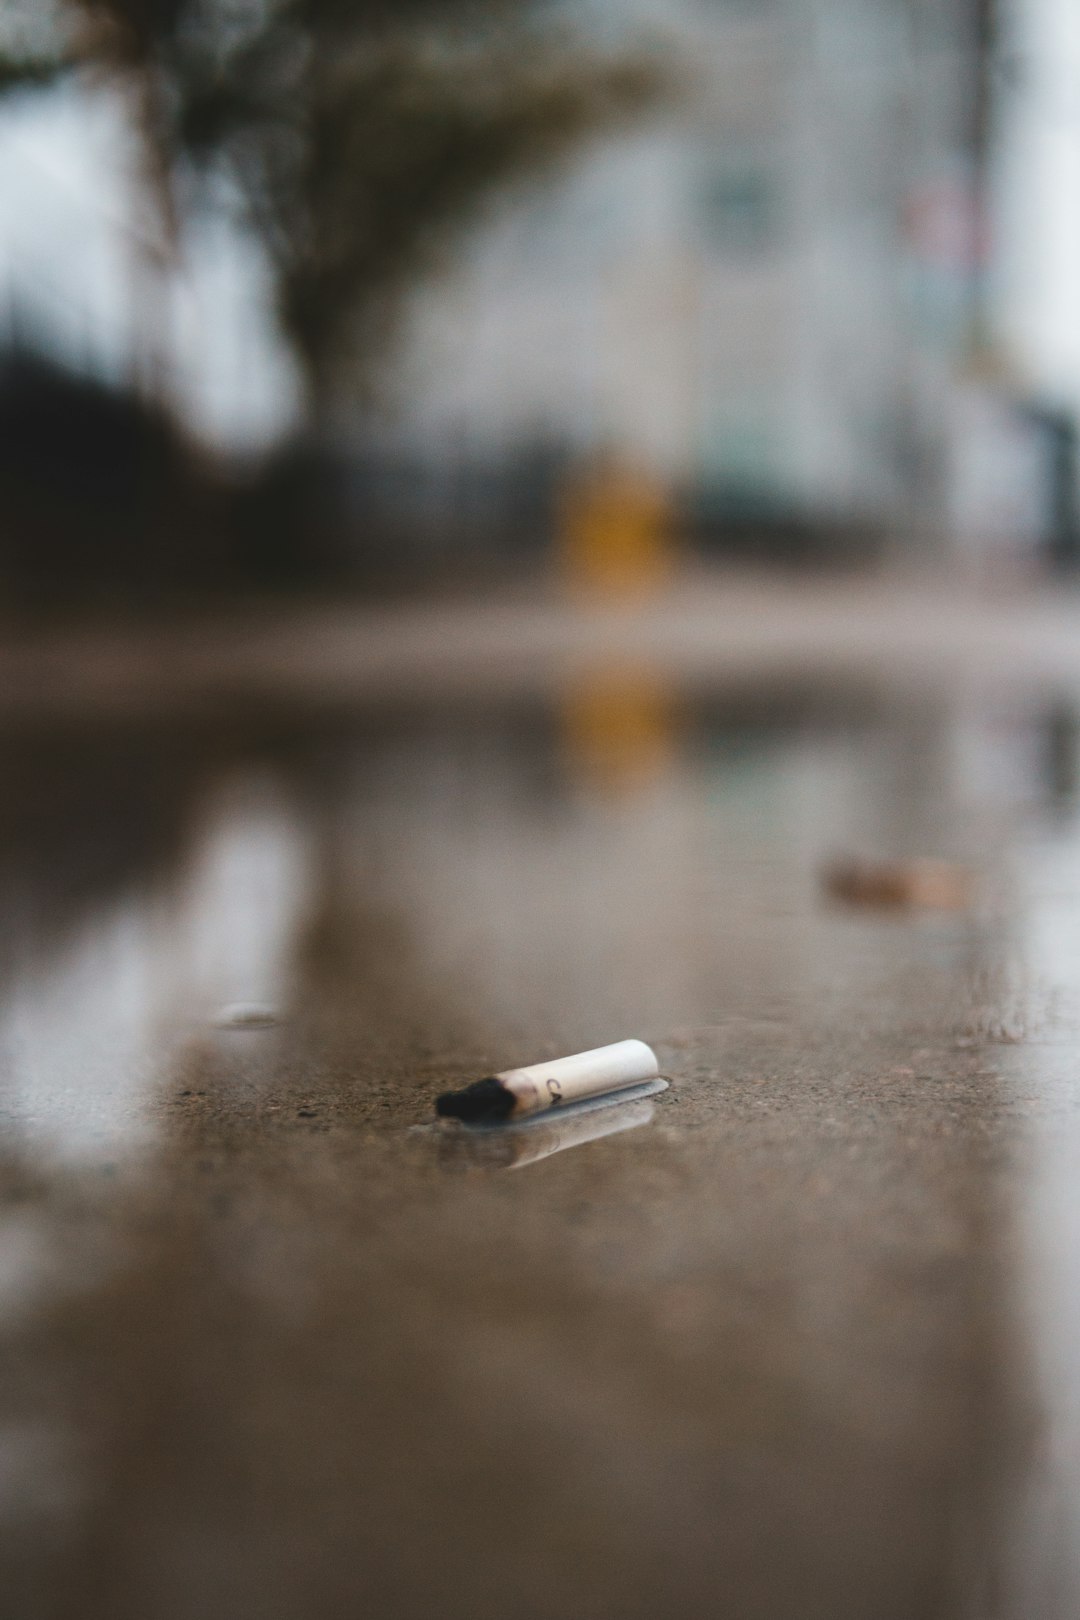 white cigarette stick on wet ground